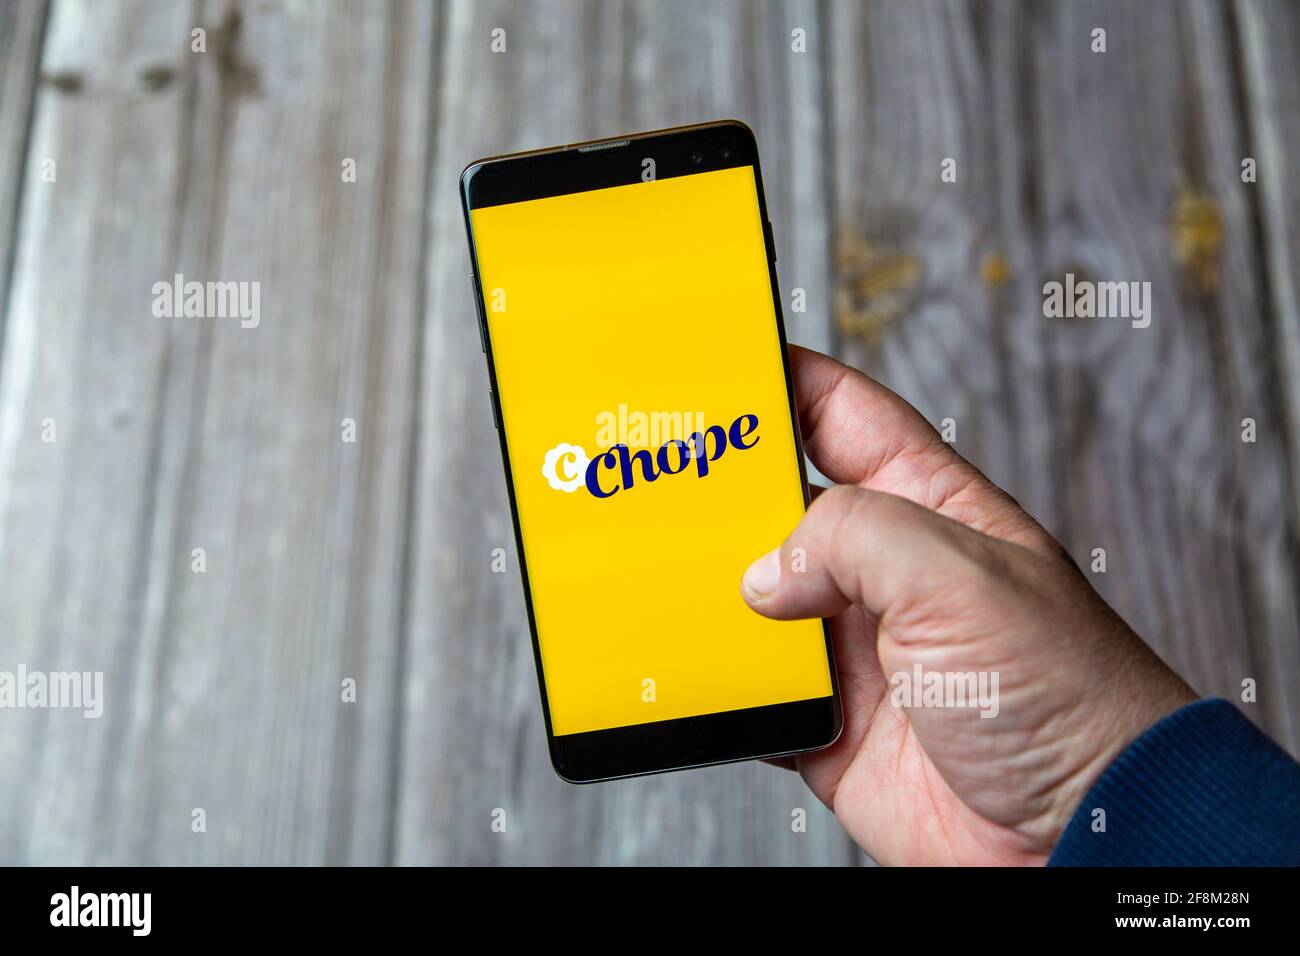 Ein Mobiltelefon oder Mobiltelefon, das in einem gehalten wird Hand zeigt die Chope App auf dem Bildschirm Stockfoto